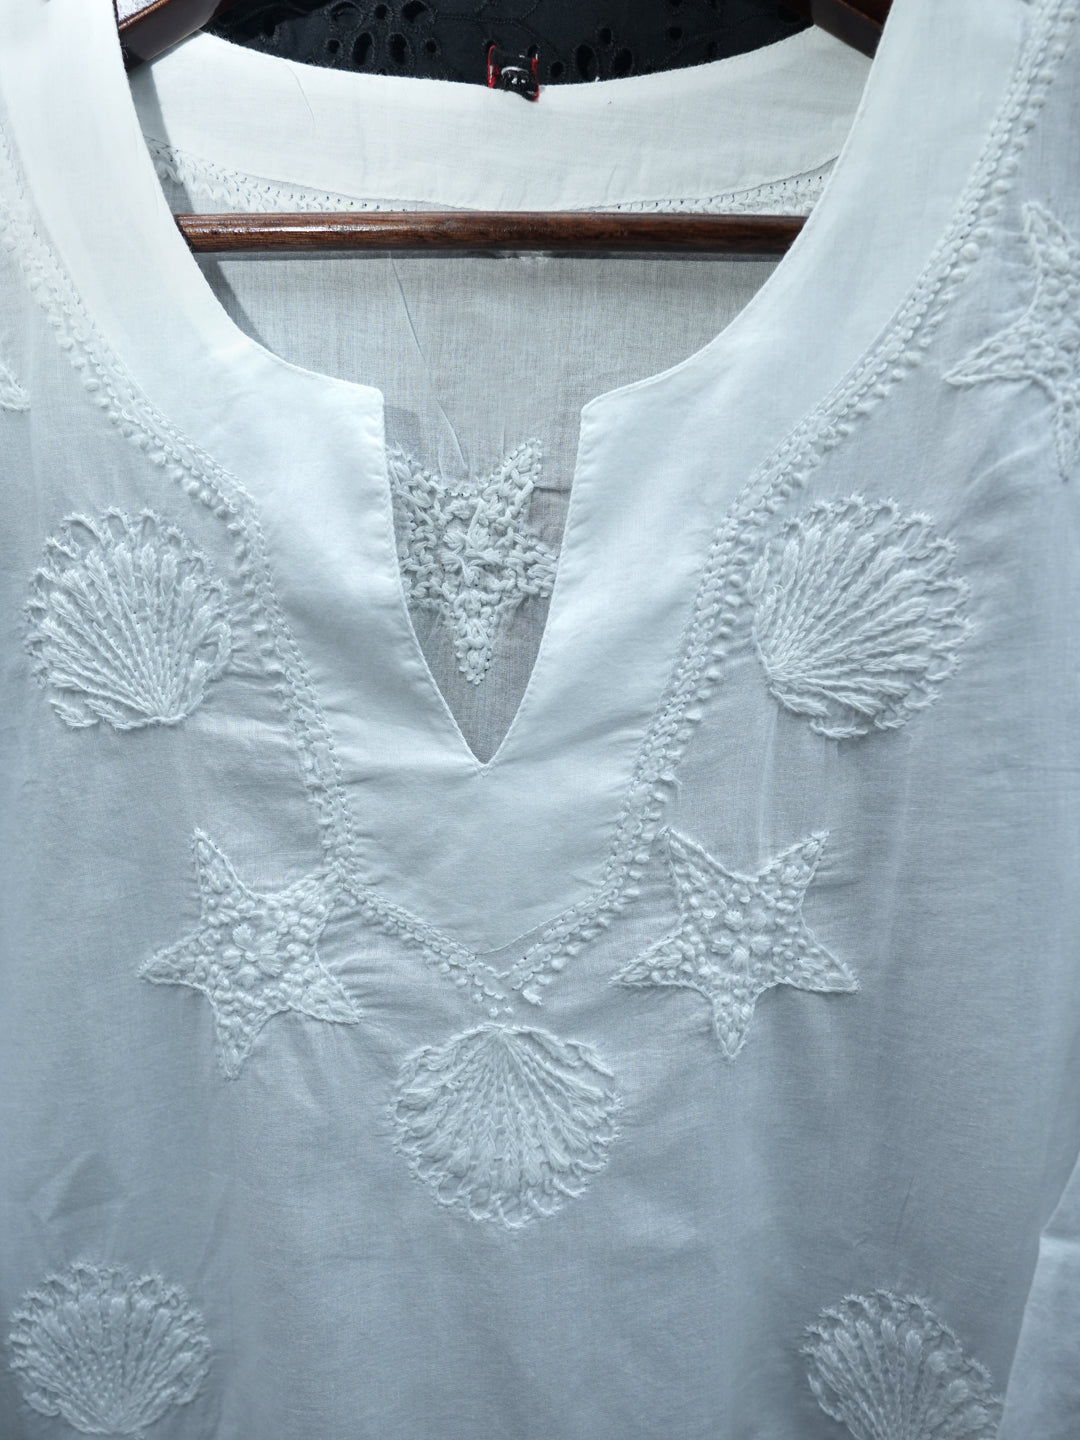 Chikankari Women Hand Embroidered Cotton Tunic PC3977